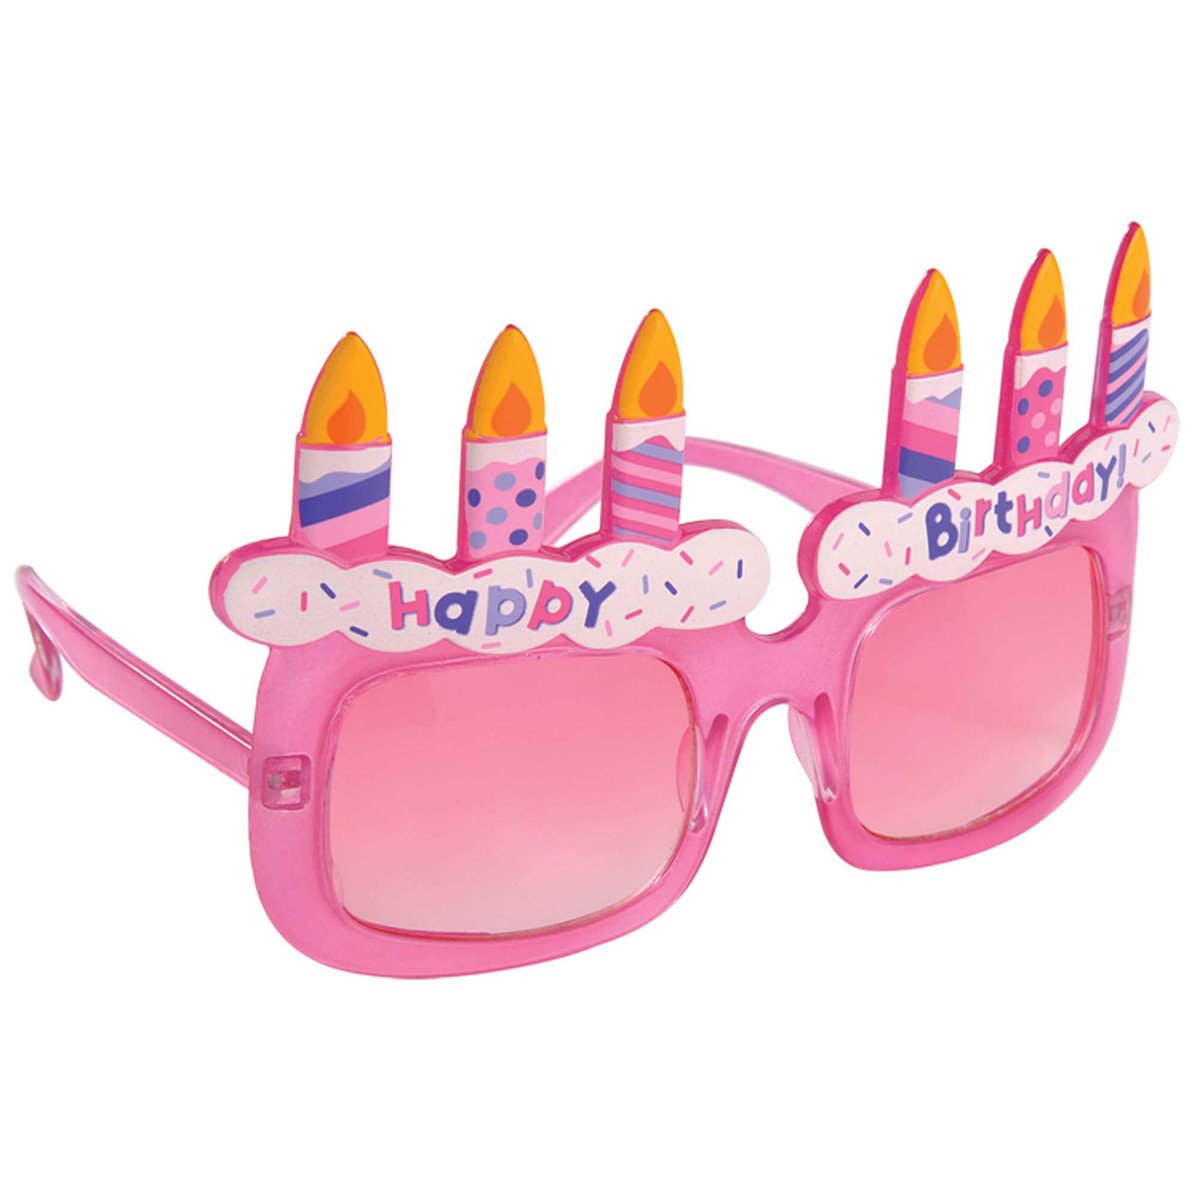 نظارات عيد ميلاد بشكل كيكة وعدسات وردية